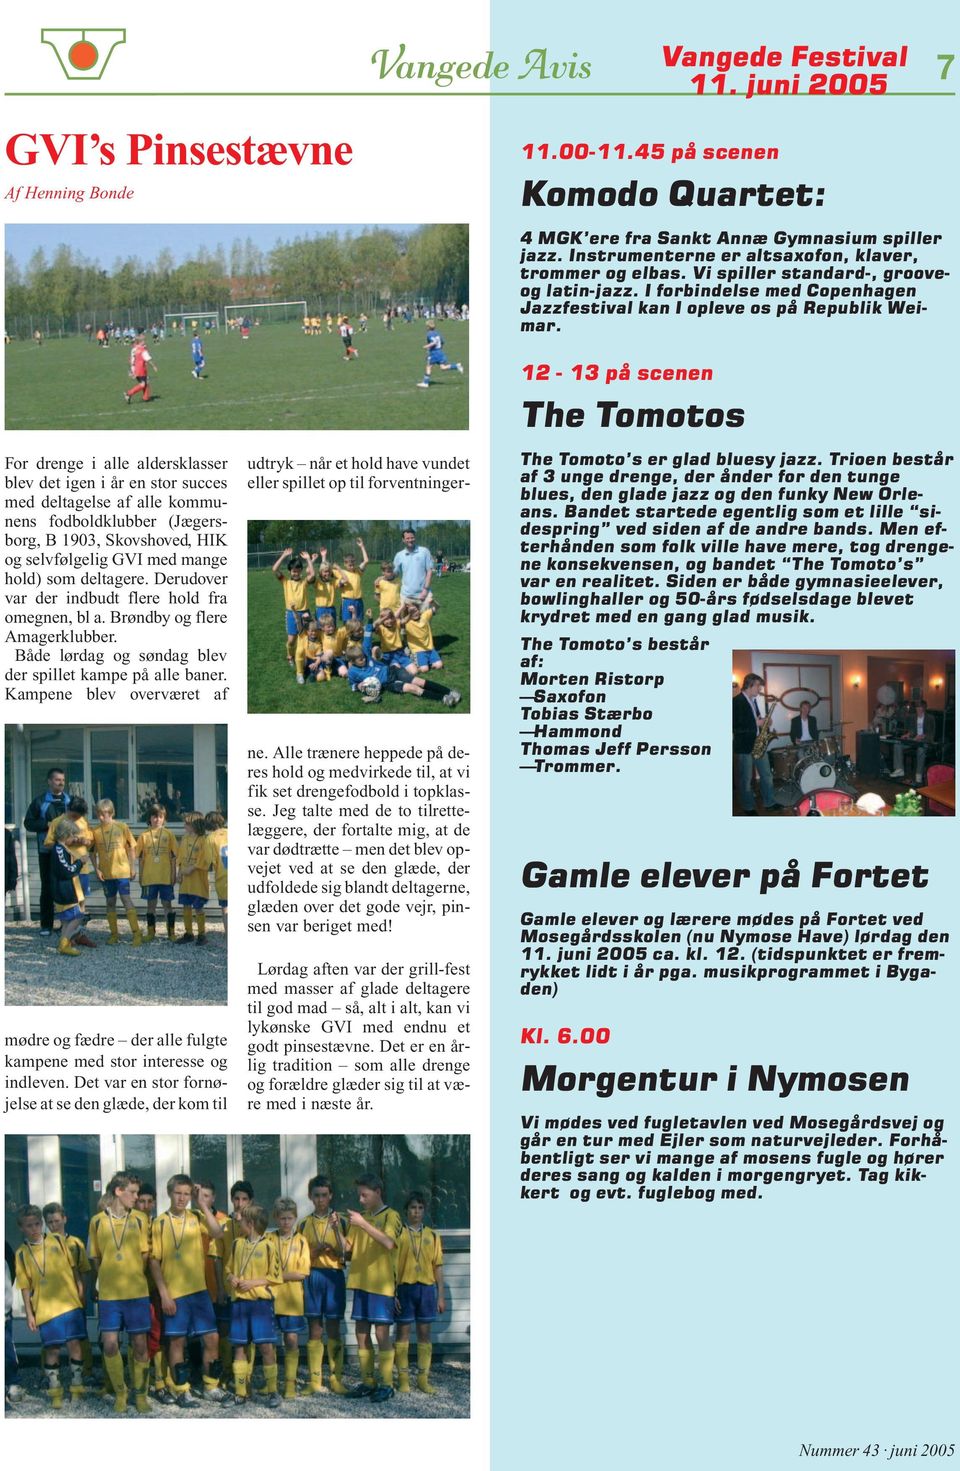 For drenge i alle aldersklasser blev det igen i år en stor succes med deltagelse af alle kommunens fodboldklubber (Jægersborg, B 1903, Skovshoved, HIK og selvfølgelig GVI med mange hold) som